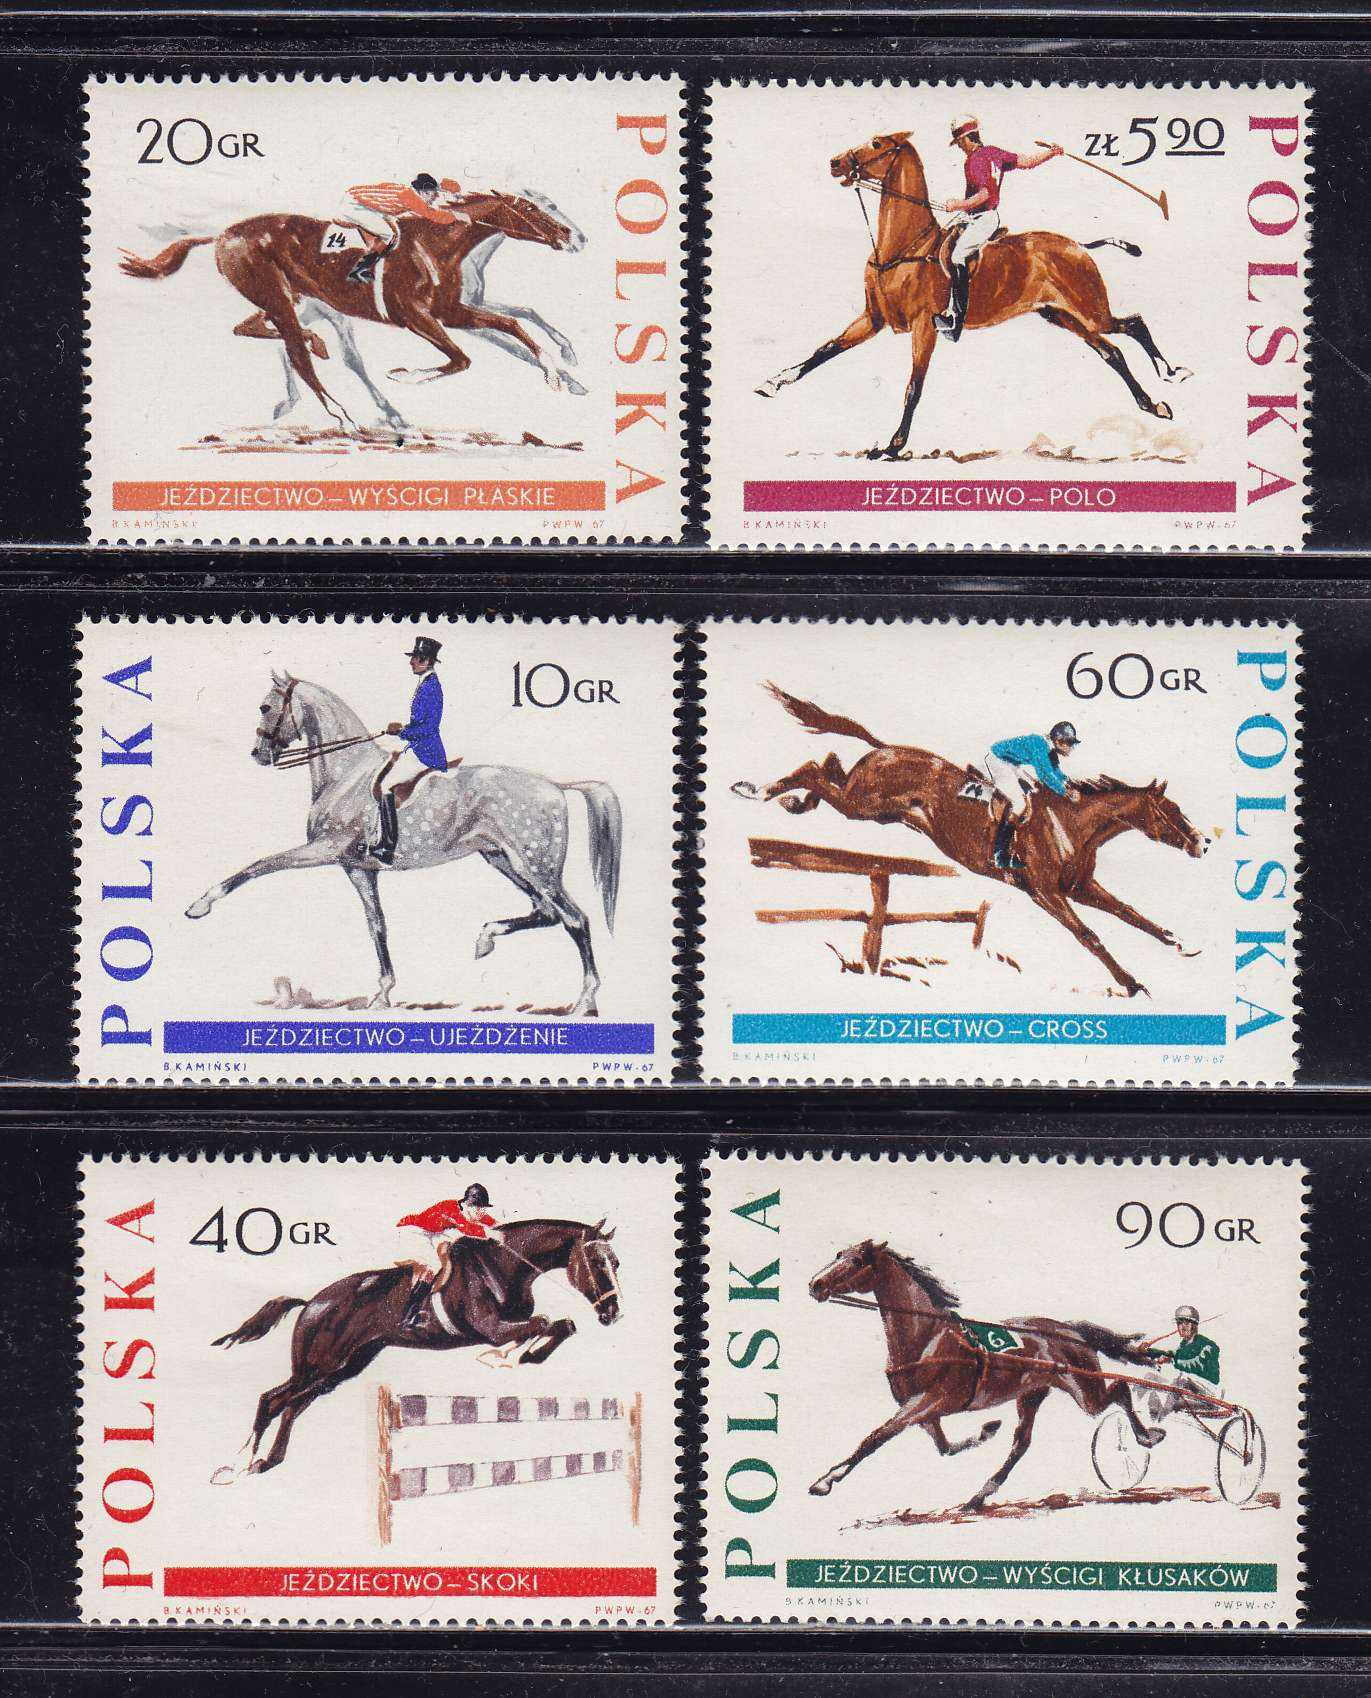 Лошадка марка. Марки лошади. Марка с лошадкой. Лошади на почтовых марках. Редкие марки лошадей.